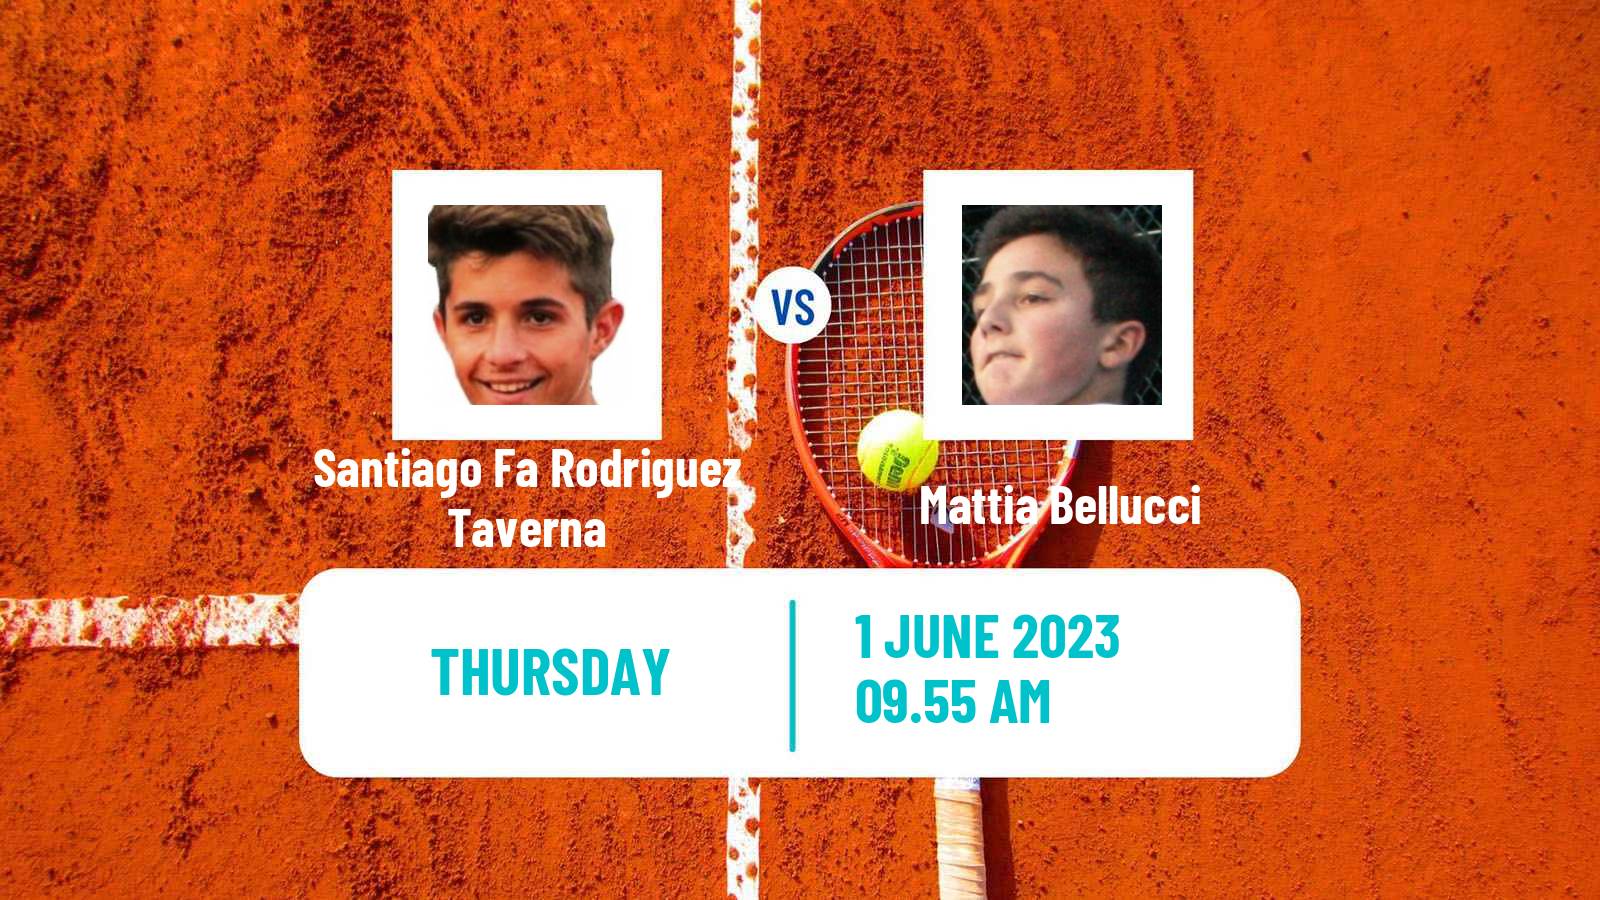 Tennis Vicenza Challenger Men Santiago Fa Rodriguez Taverna - Mattia Bellucci